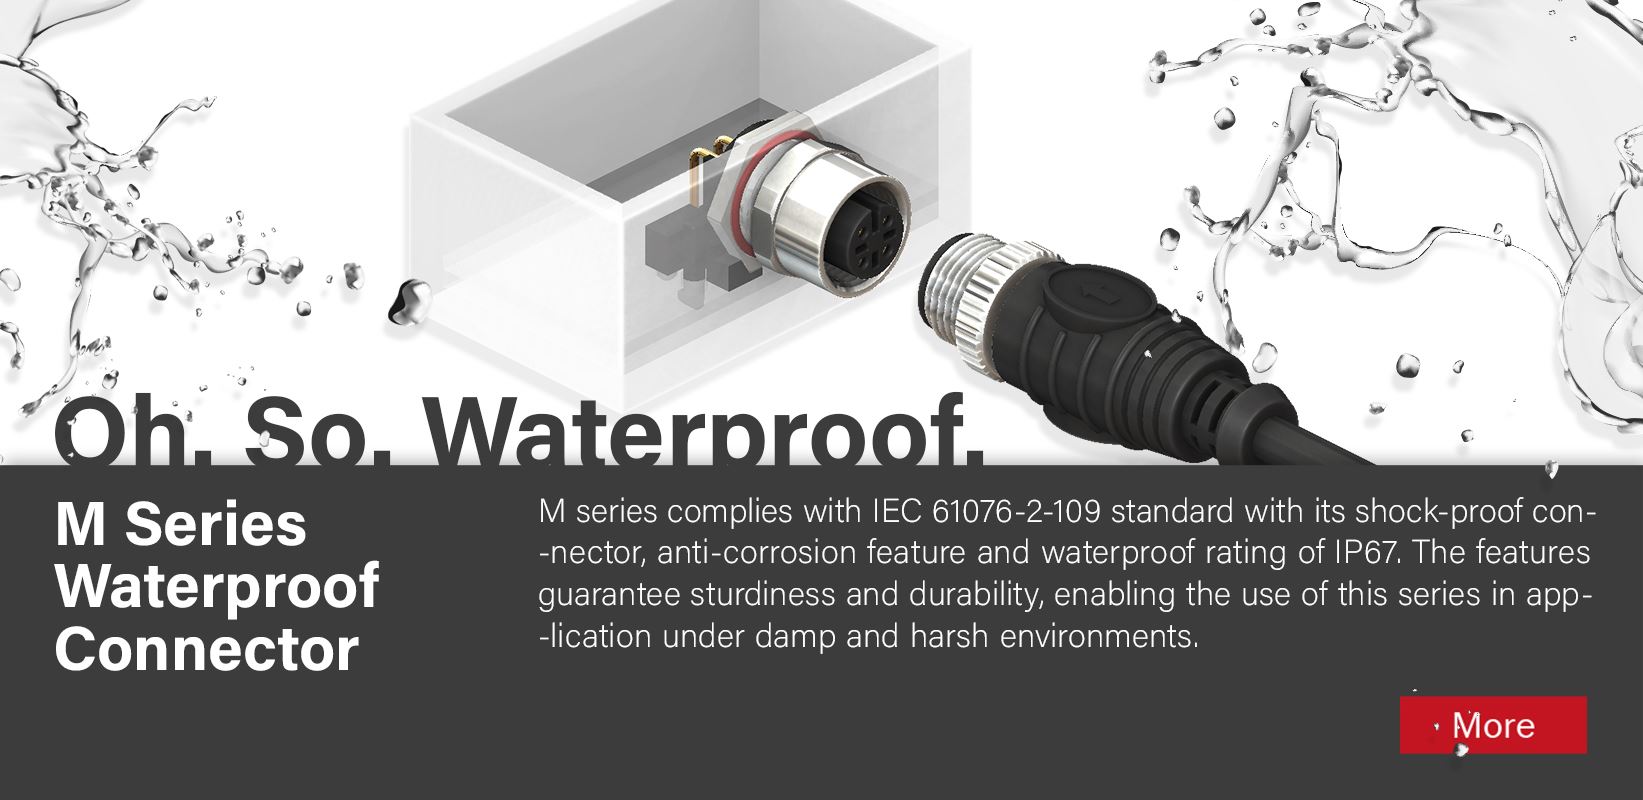 Oh. So. Waterproof. M Series Waterproof Connector